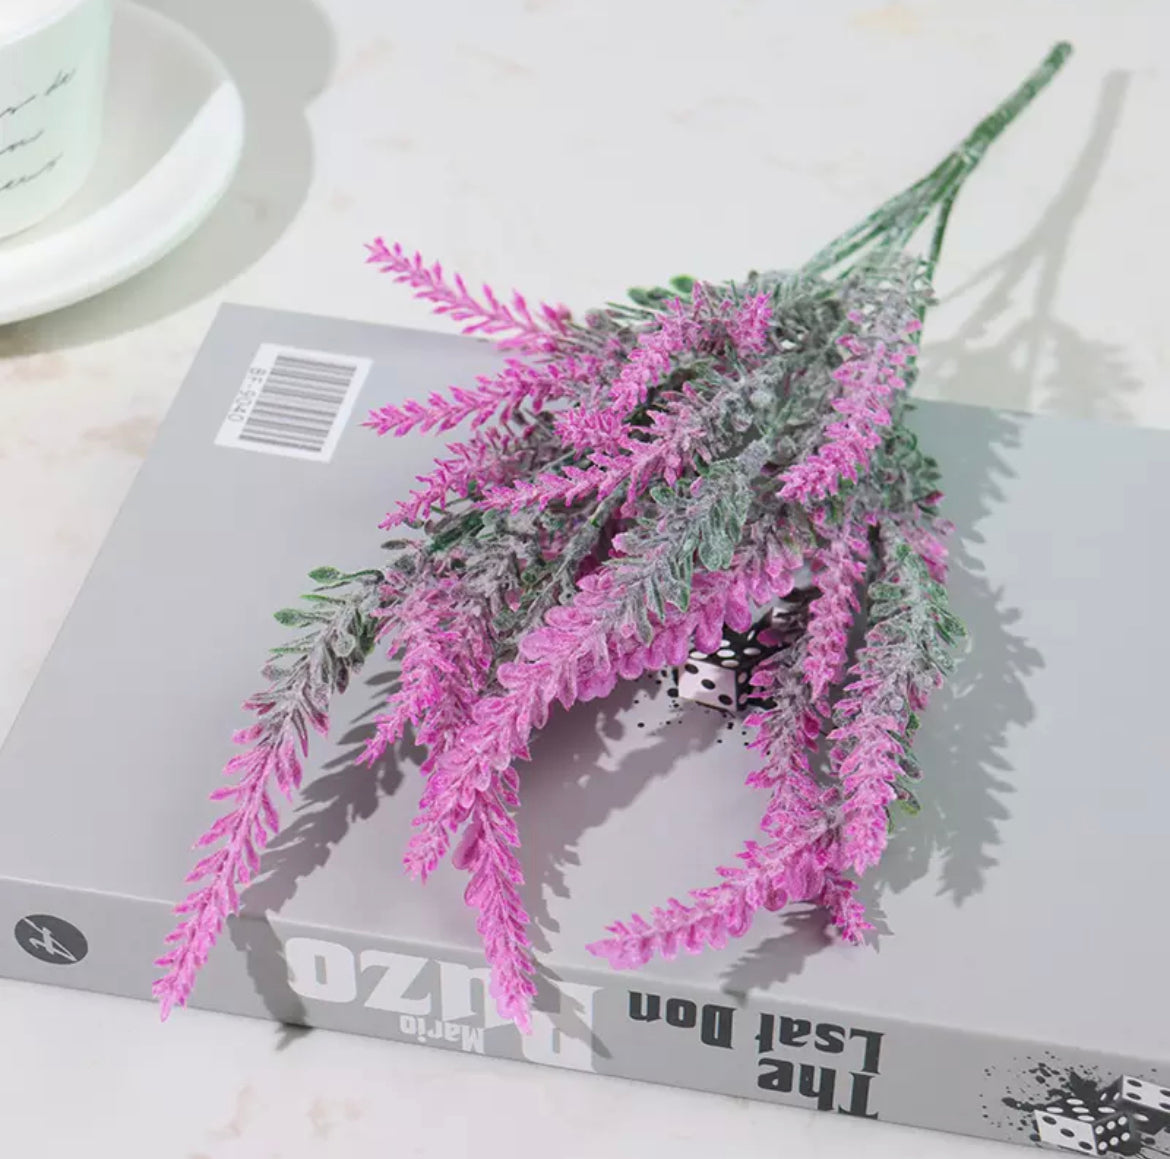 Artificial lavender flowers